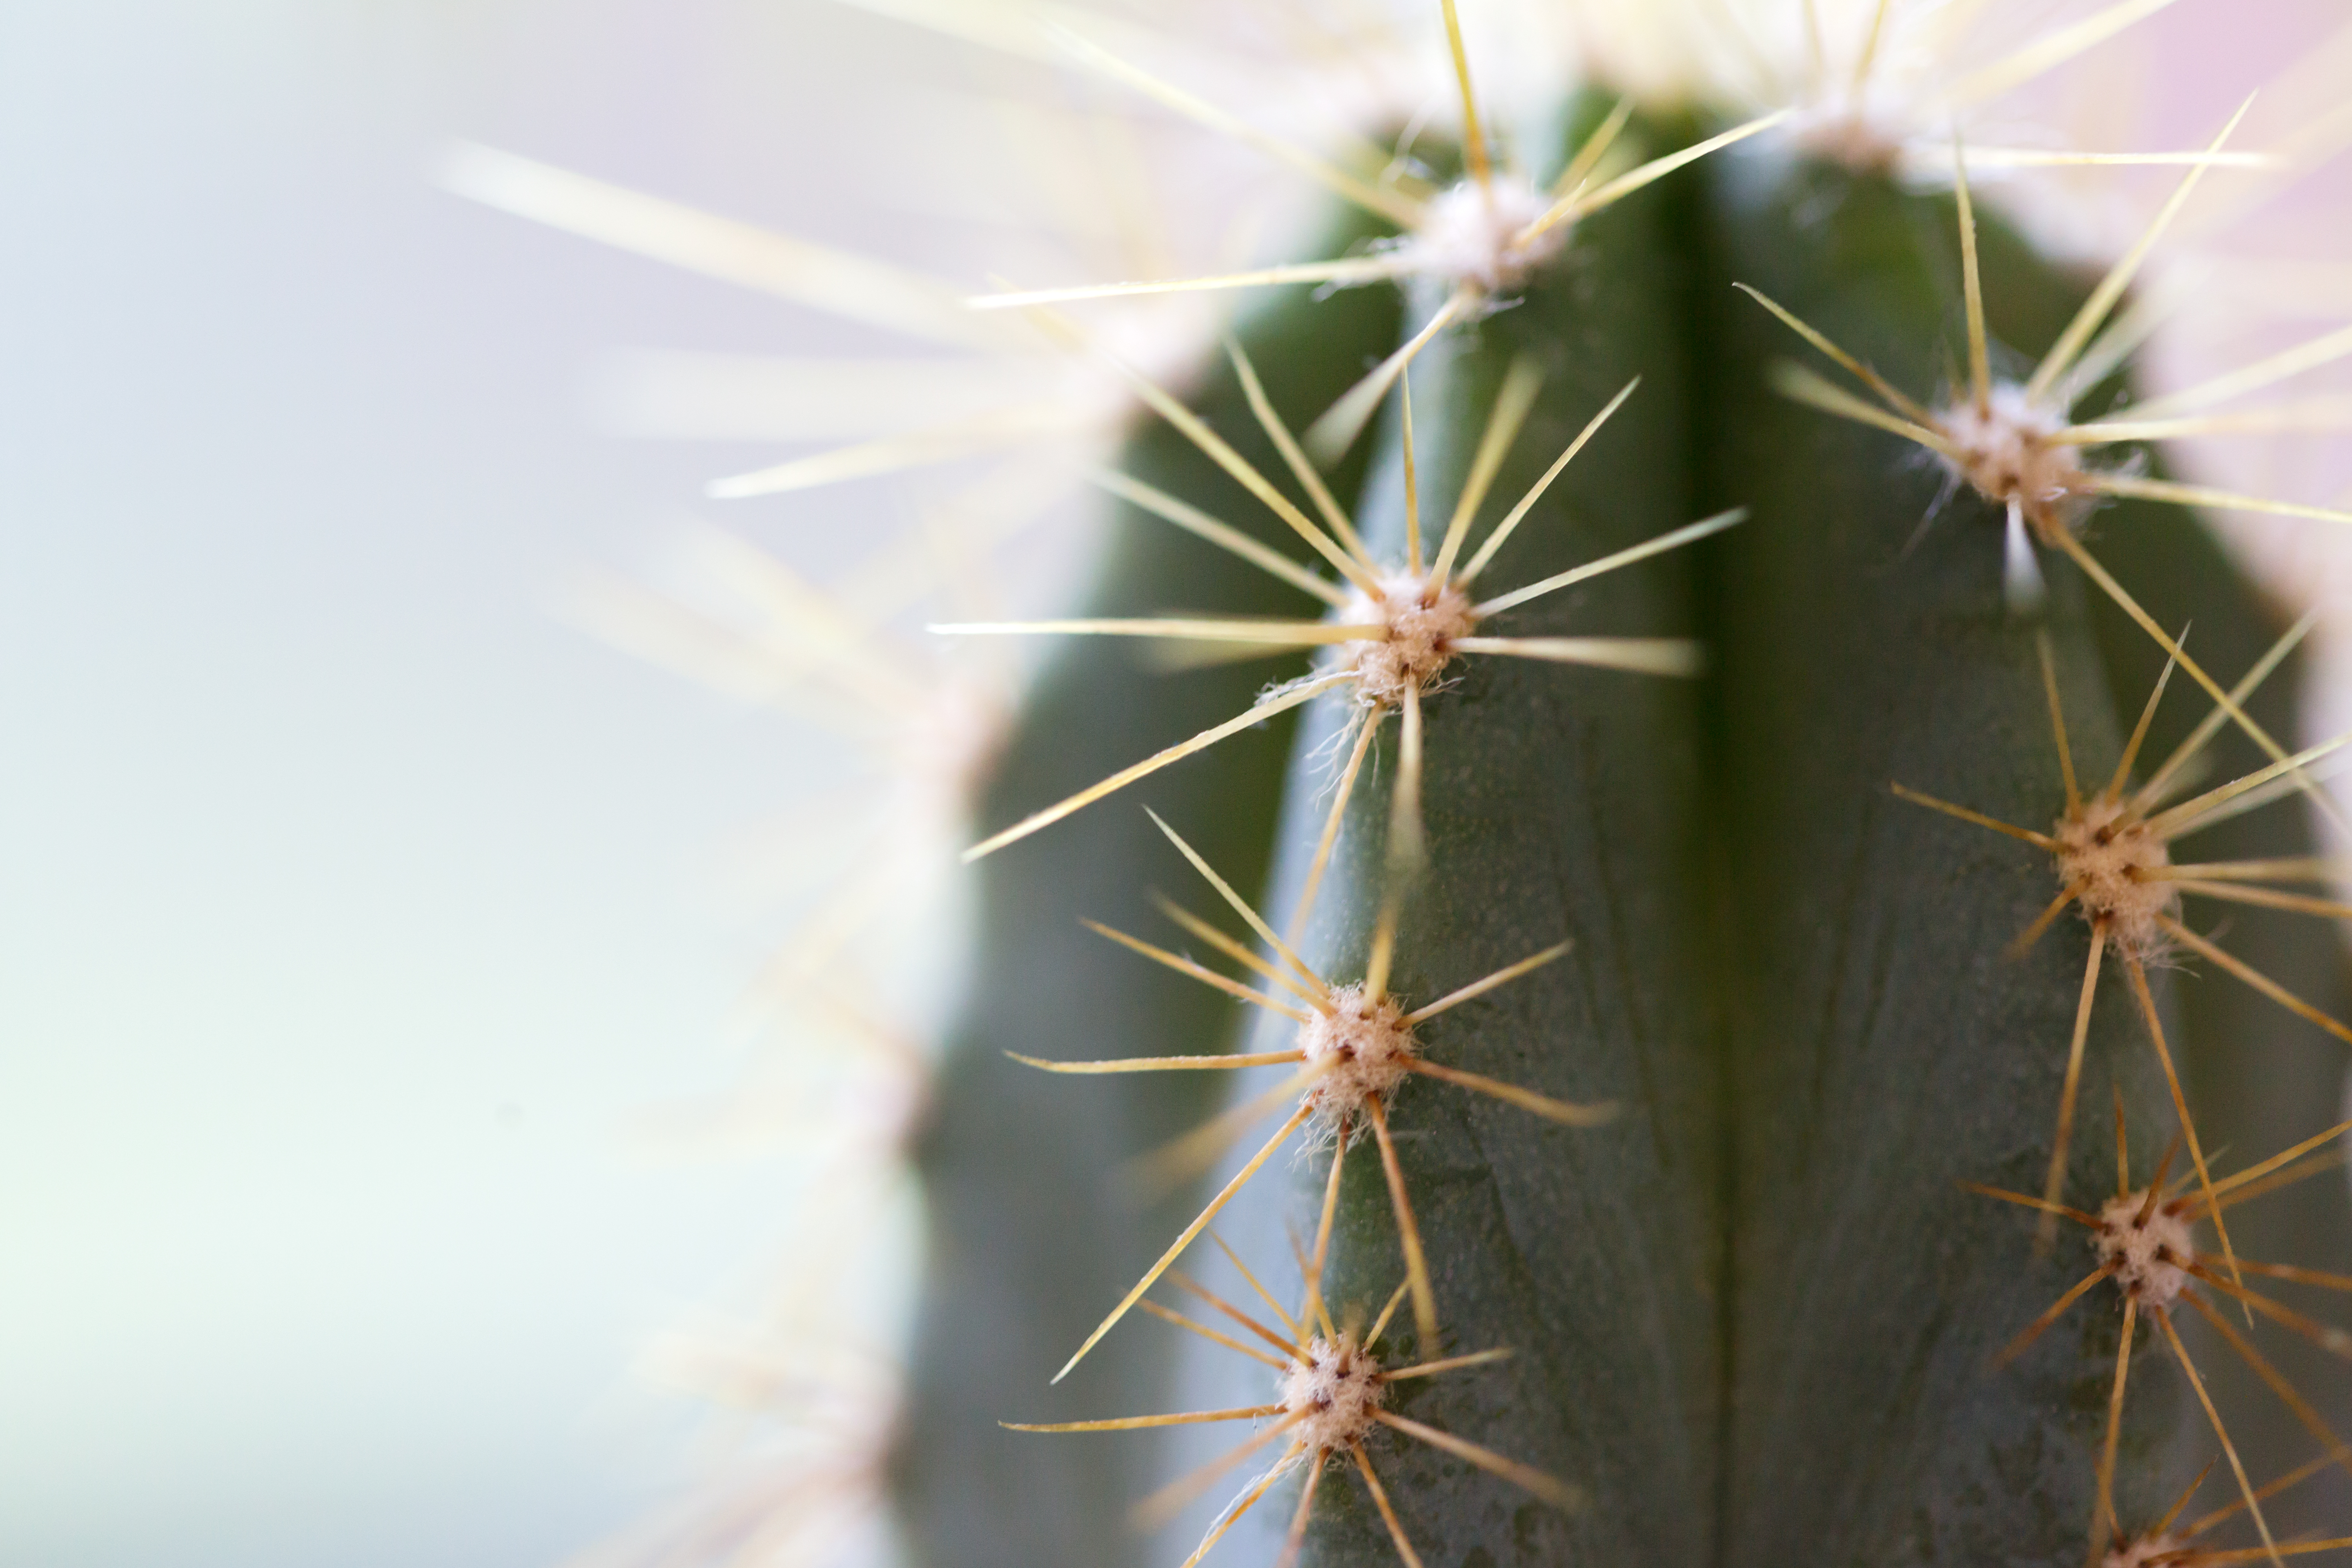 Cactus thorns. Macro cactus thorns. Close up thorns of cactus